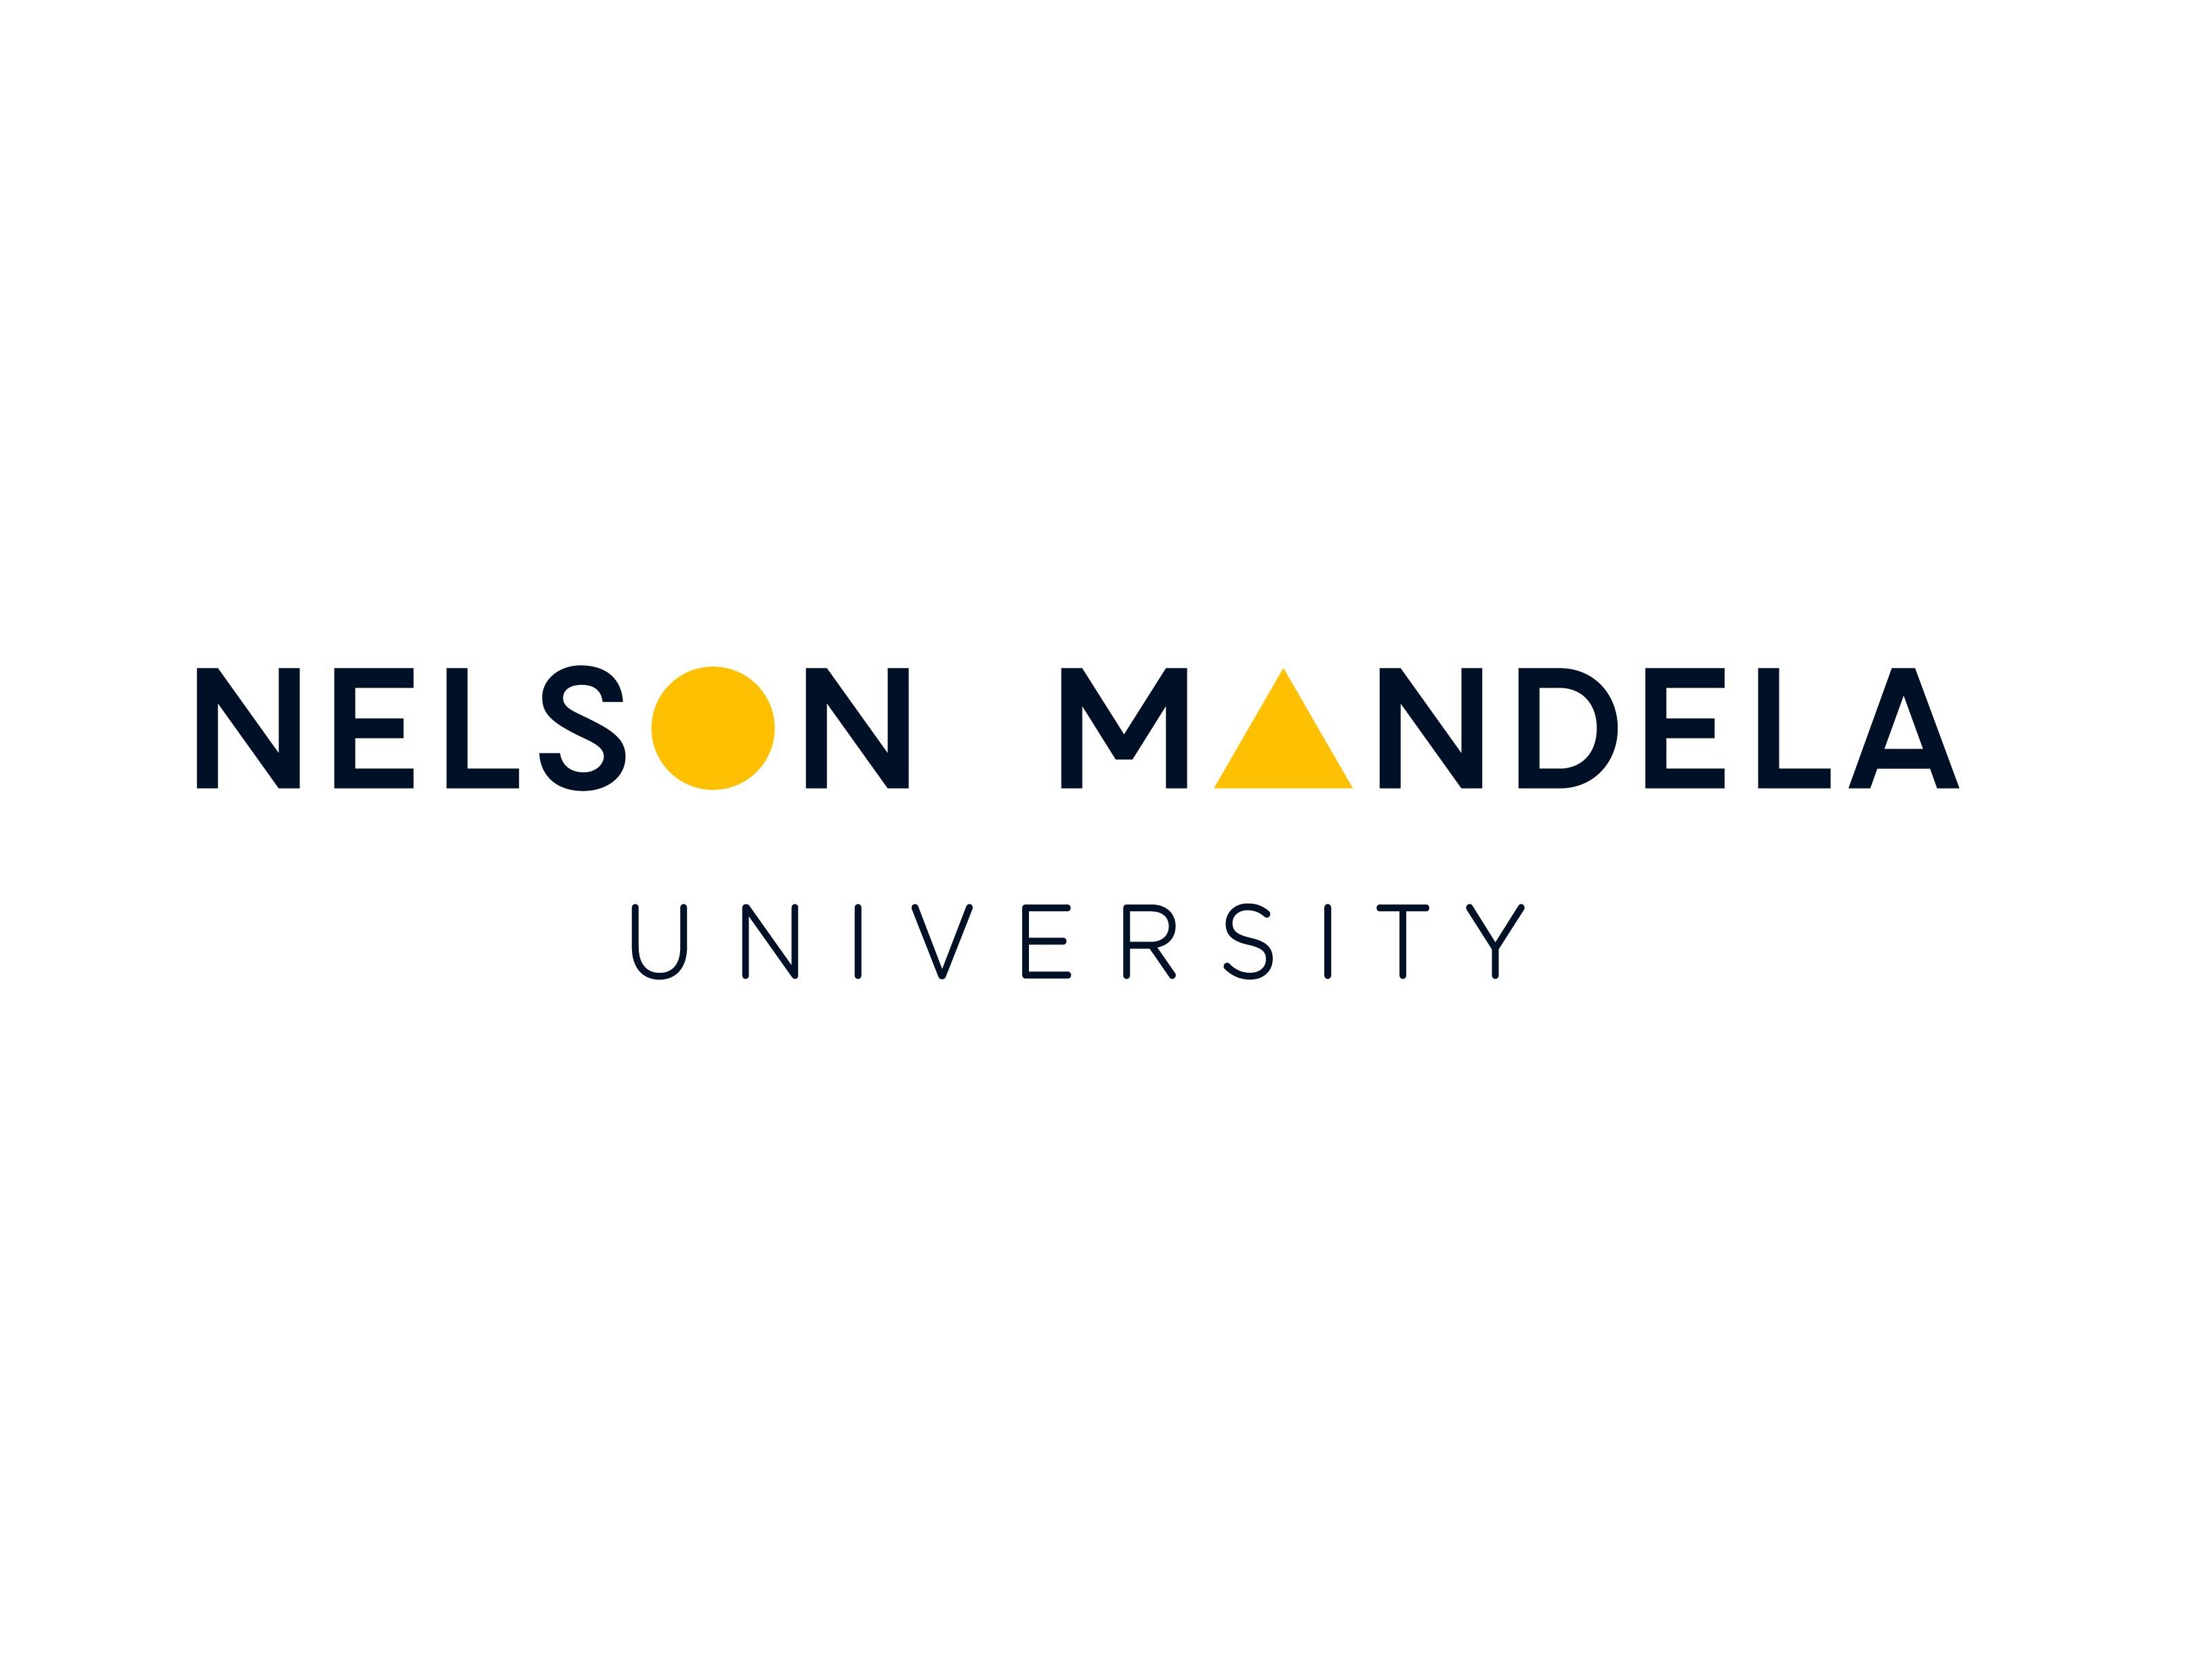 Nelson-Mandela-University-logo-tight-frame-blue-on-white.jpg